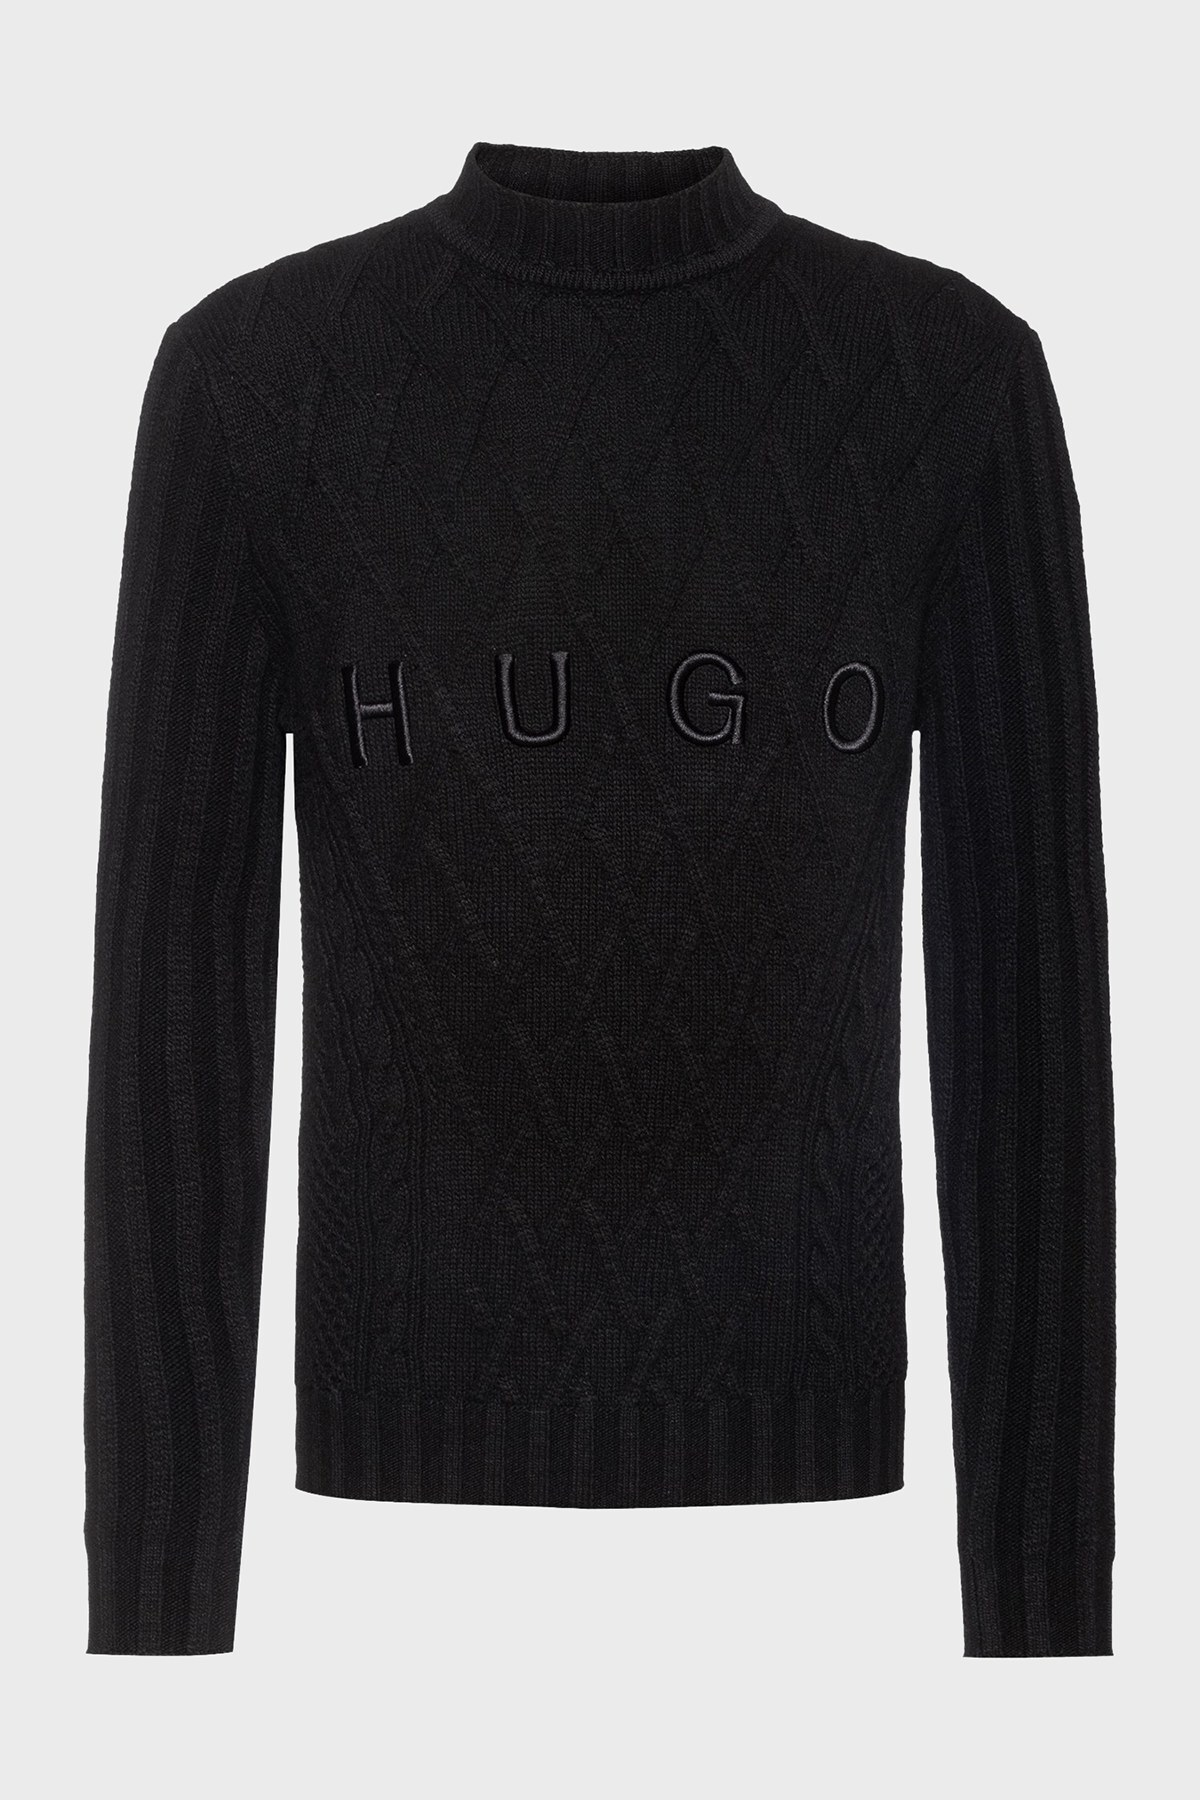 Hugo Boss Logolu Yün Karışımlı Dik Yaka Erkek Kazak 50460871 001 SİYAH